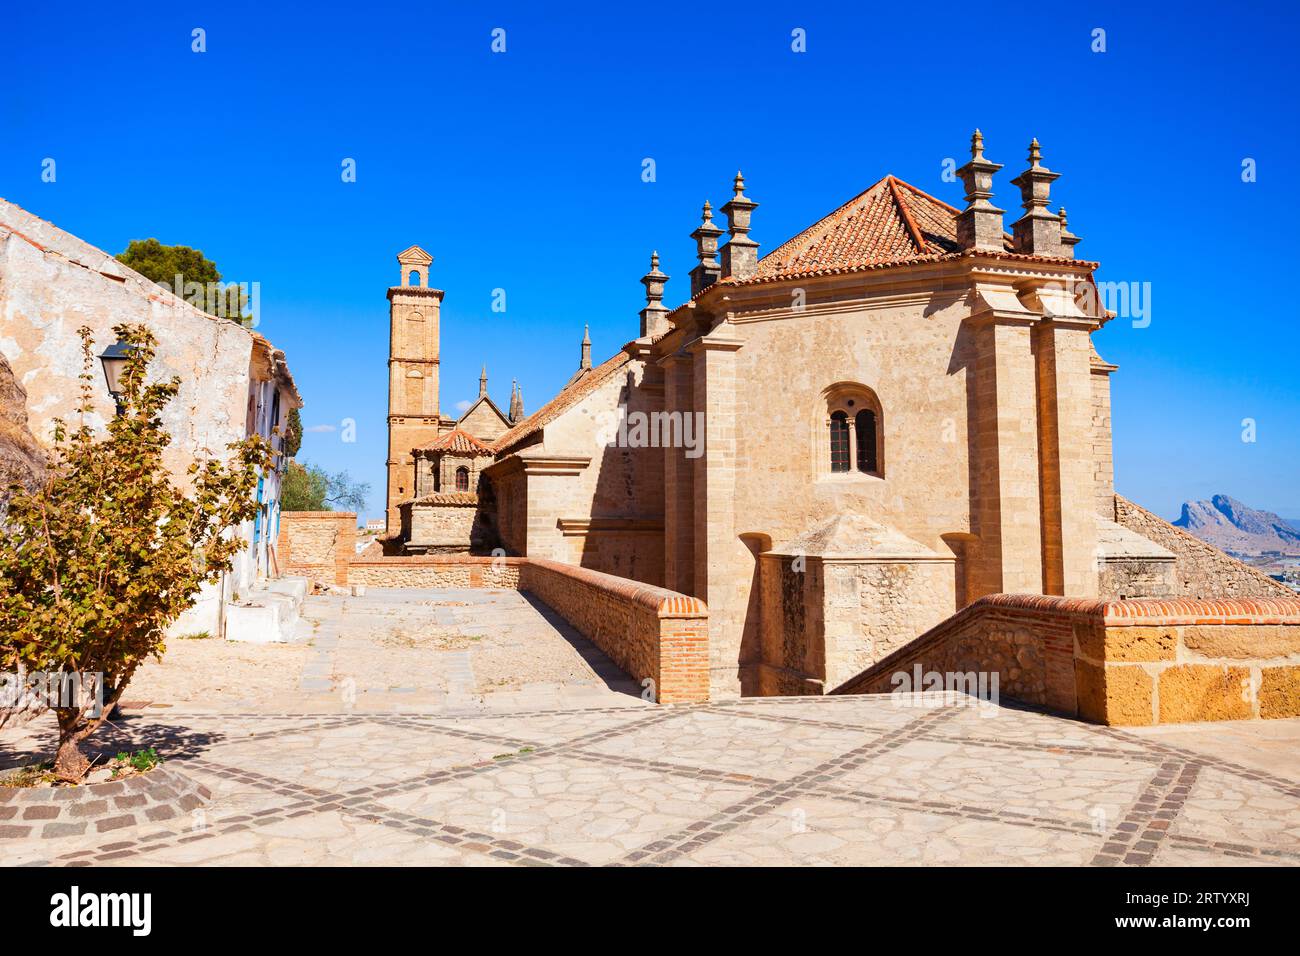 Chiesa Collegiata reale di Santa Maria la Mayor ad Antequera. Antequera è una città della provincia di Malaga, la comunità dell'Andalusia in Spagna. Foto Stock